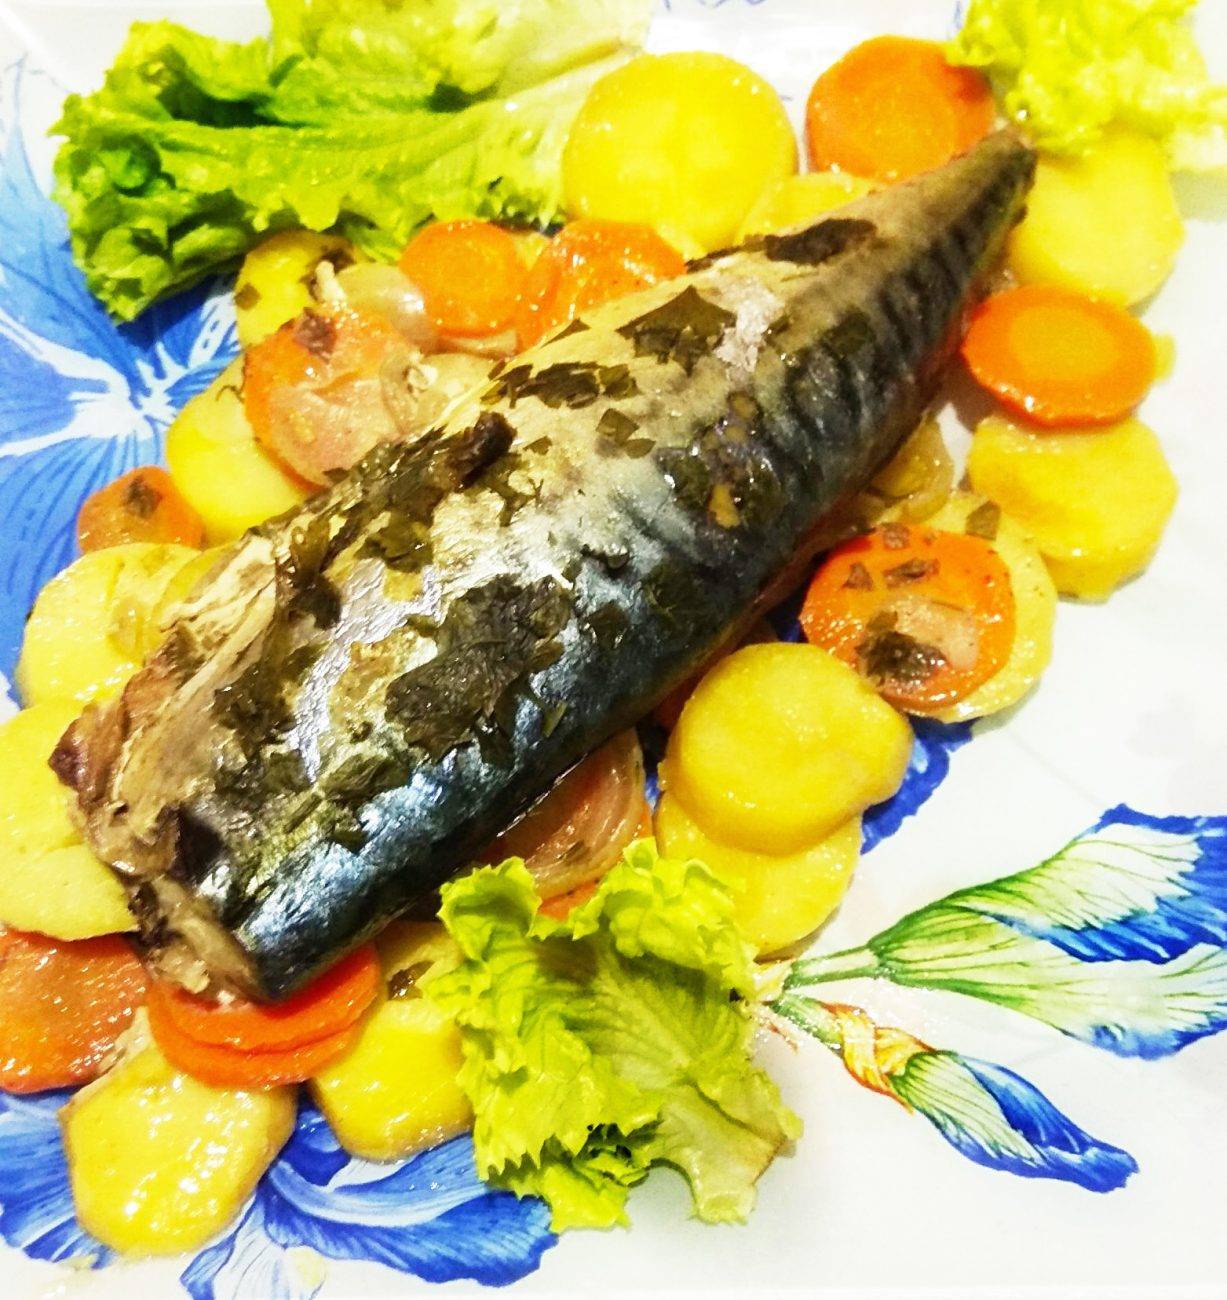 Рыба с овощами (более 100 рецептов с фото) - рецепты с фотографиями на поварёнок.ру